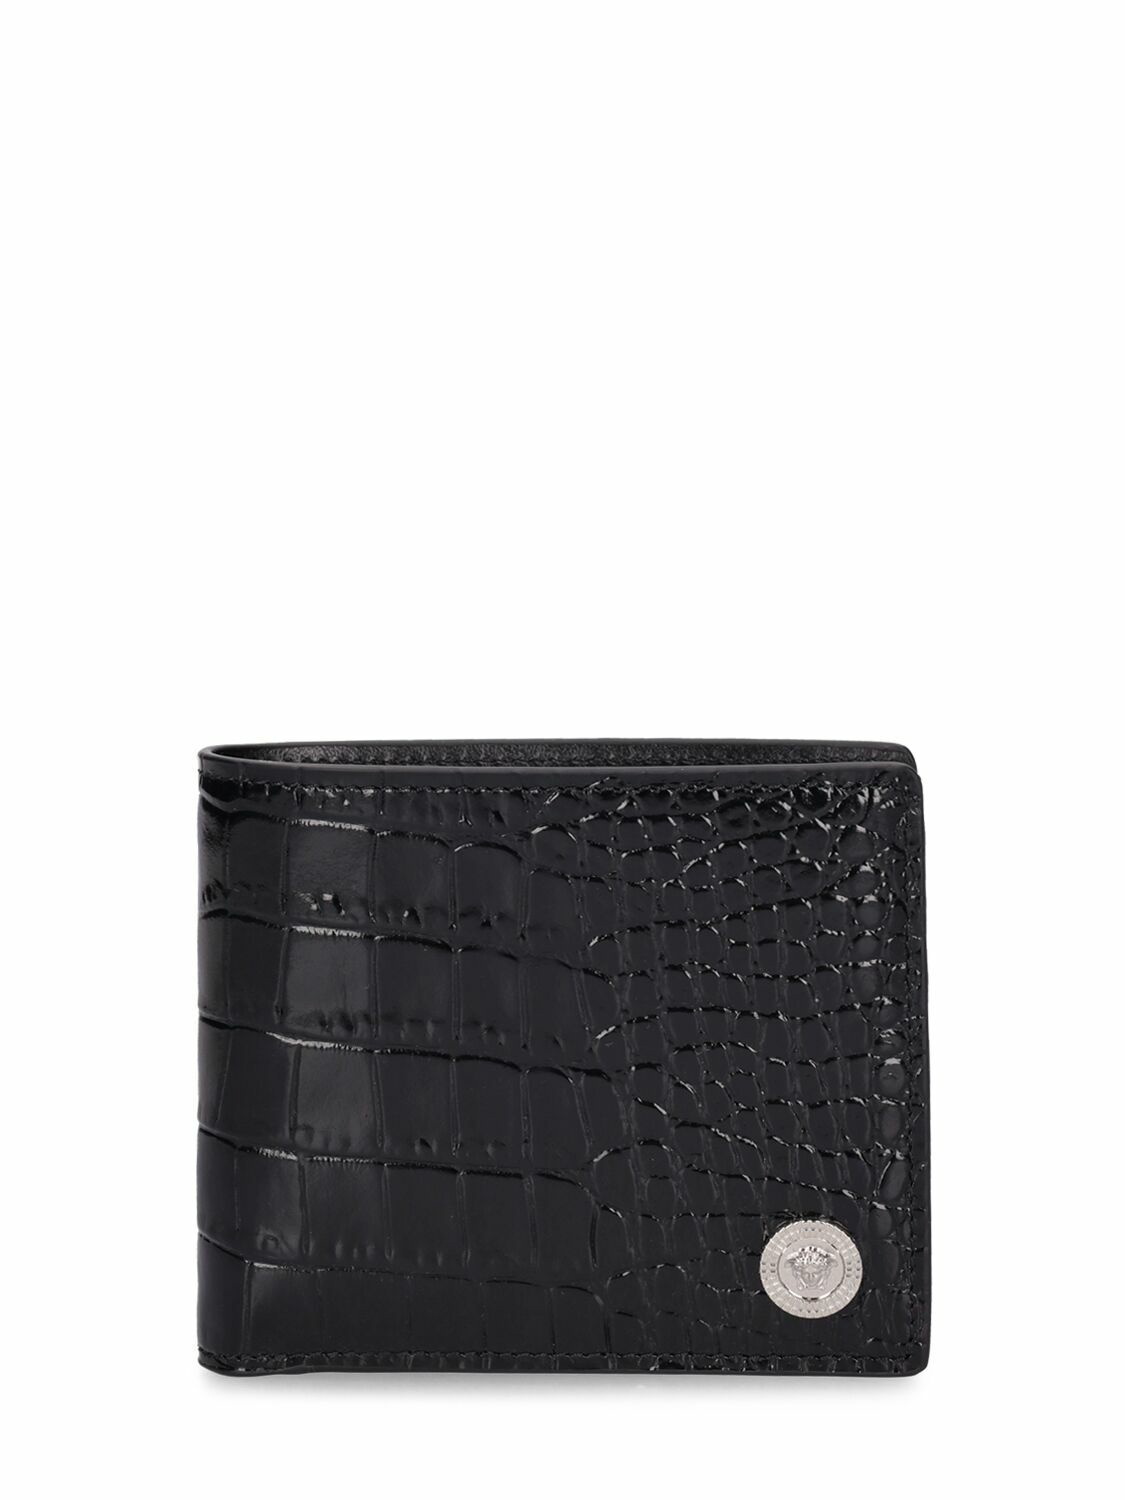 Bi Fold Premium Leather Mens Wallet - Black, Card Slots: 6 at Rs 1600 in  Mumbai